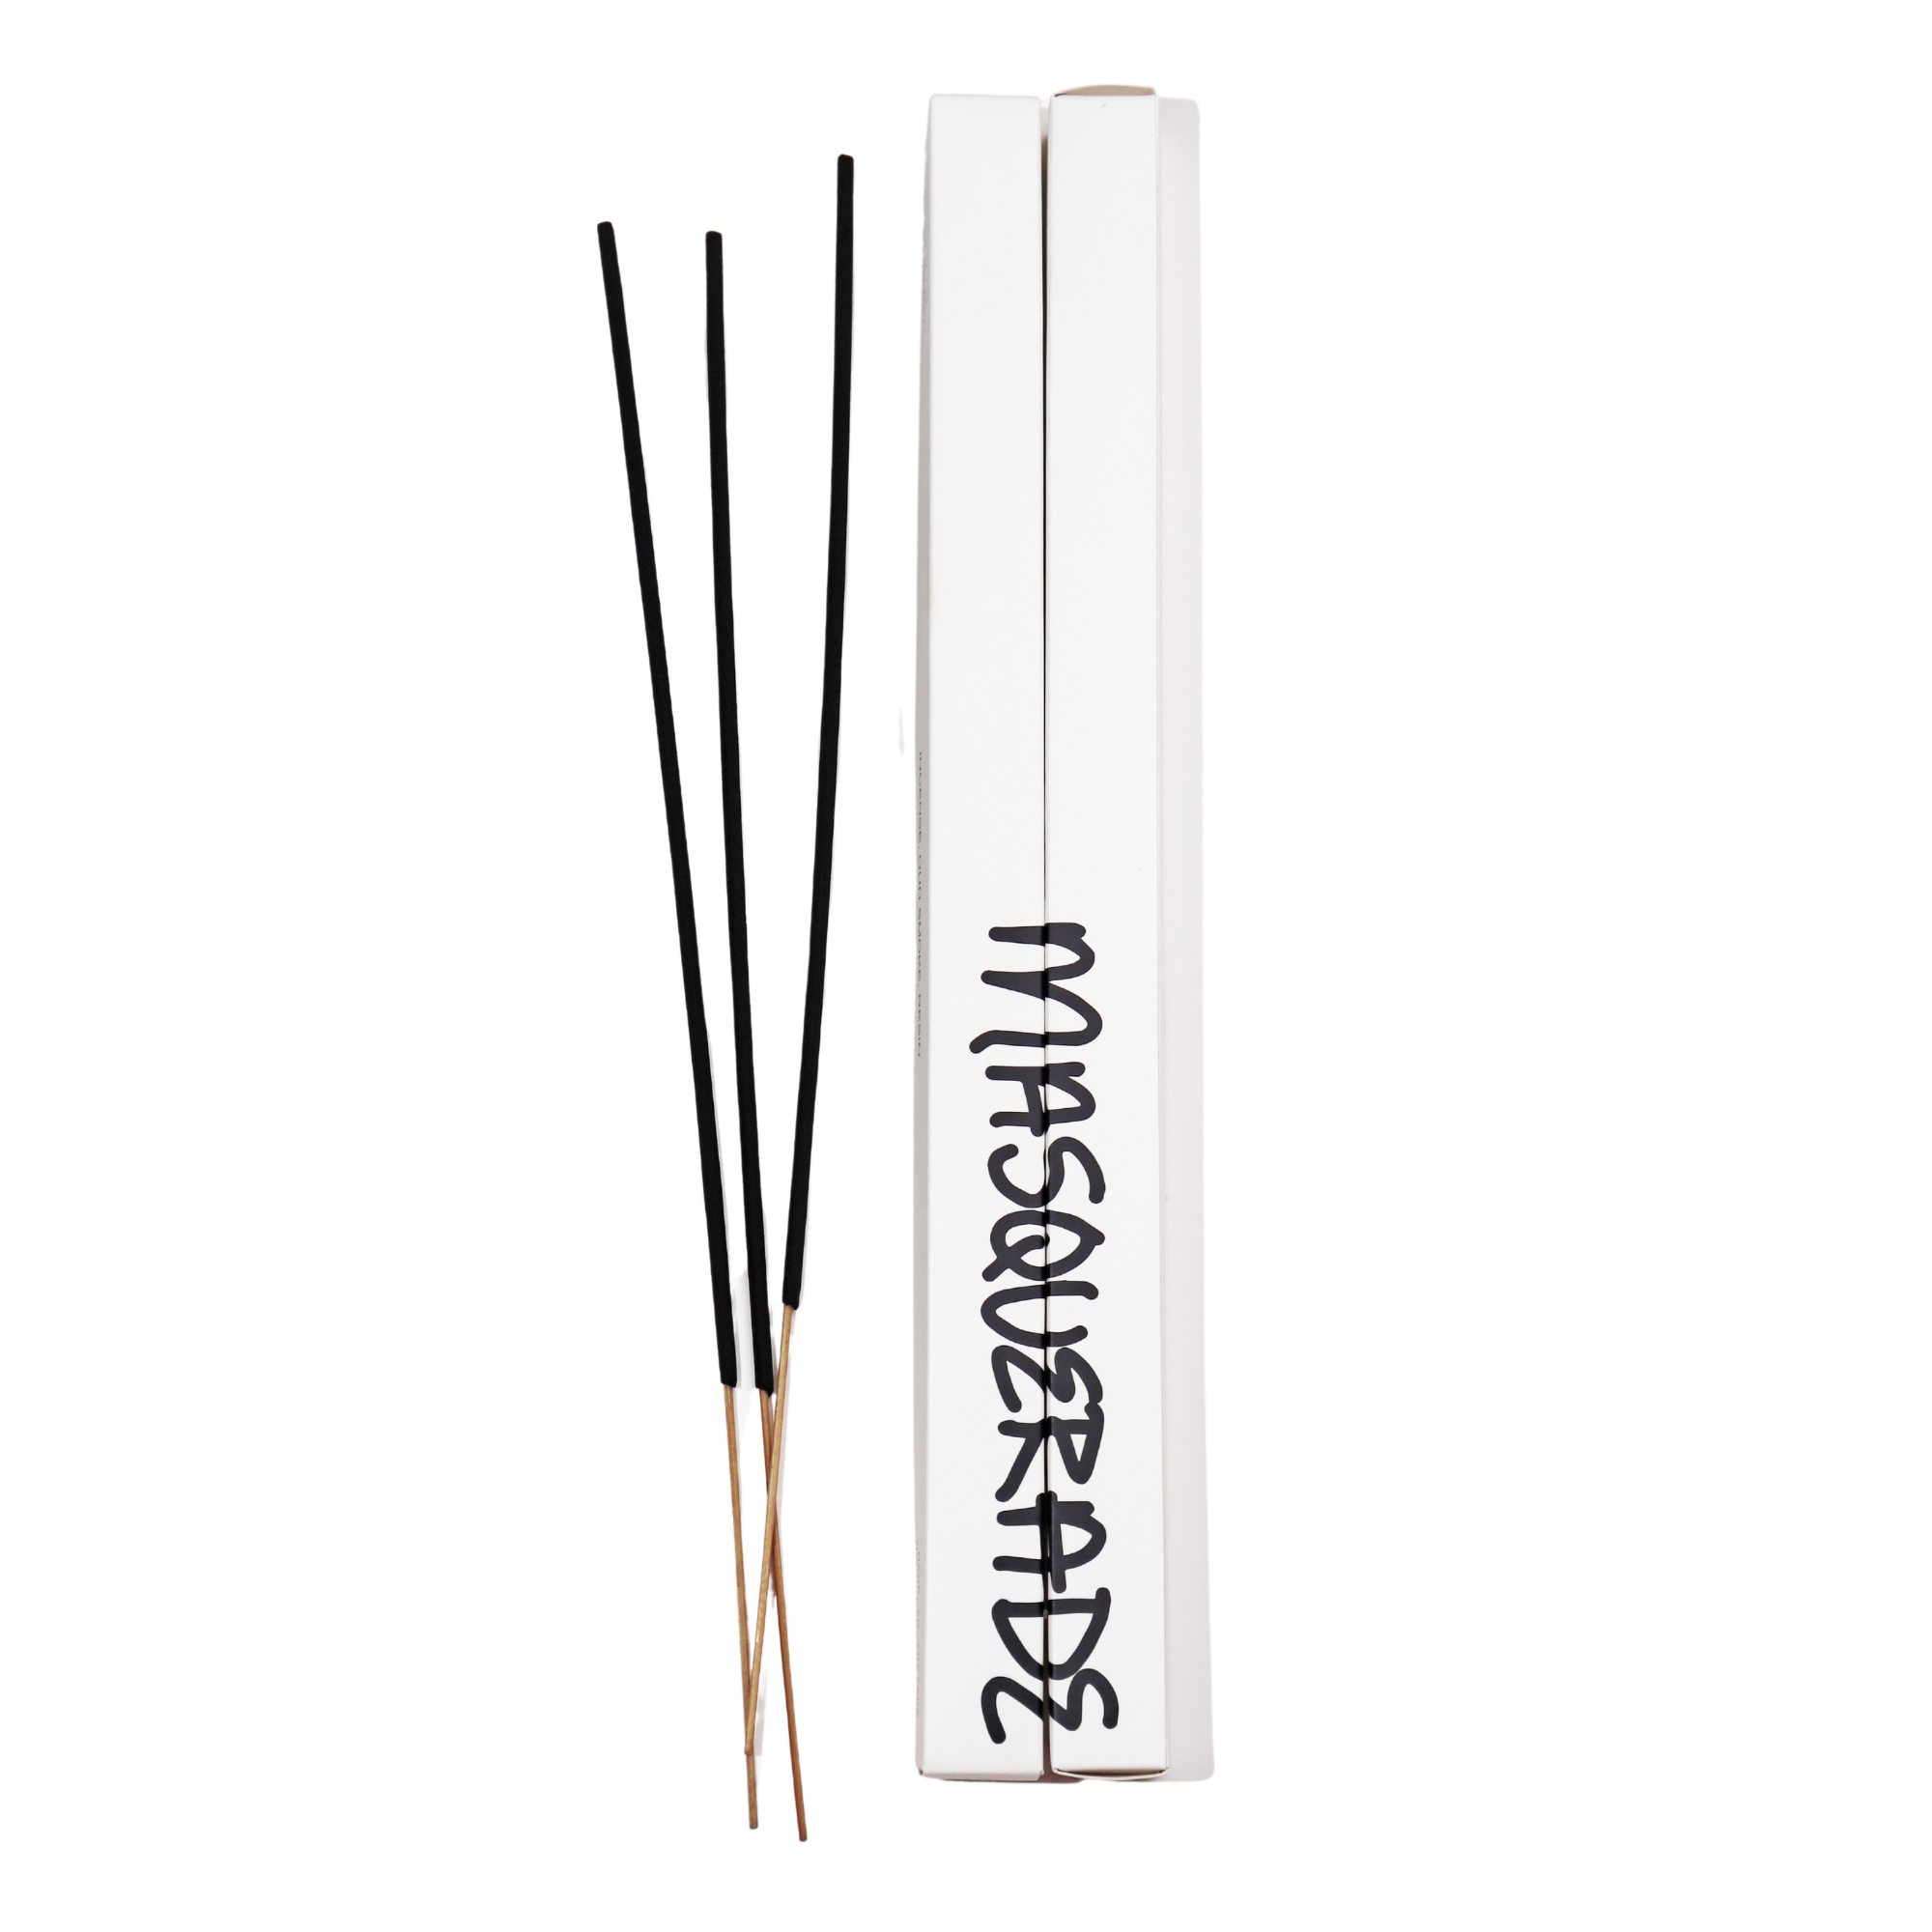 Masqeurade - Incense Sticks